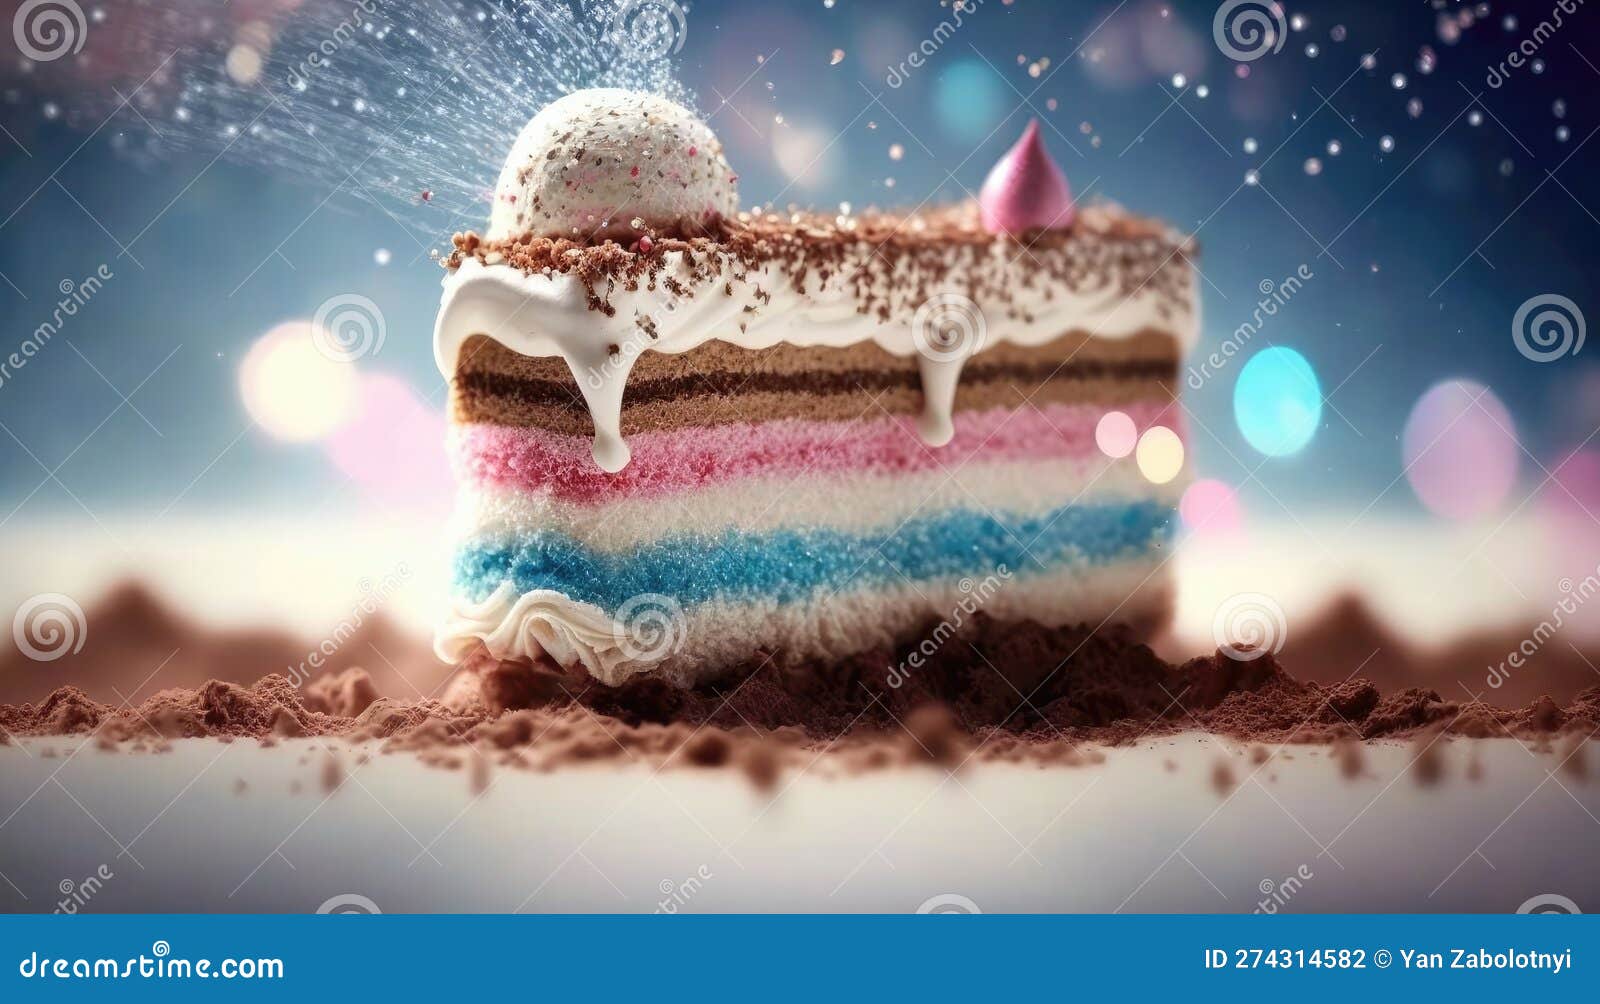 4u.am | Cake «Anare Cake» Fantasy anaré